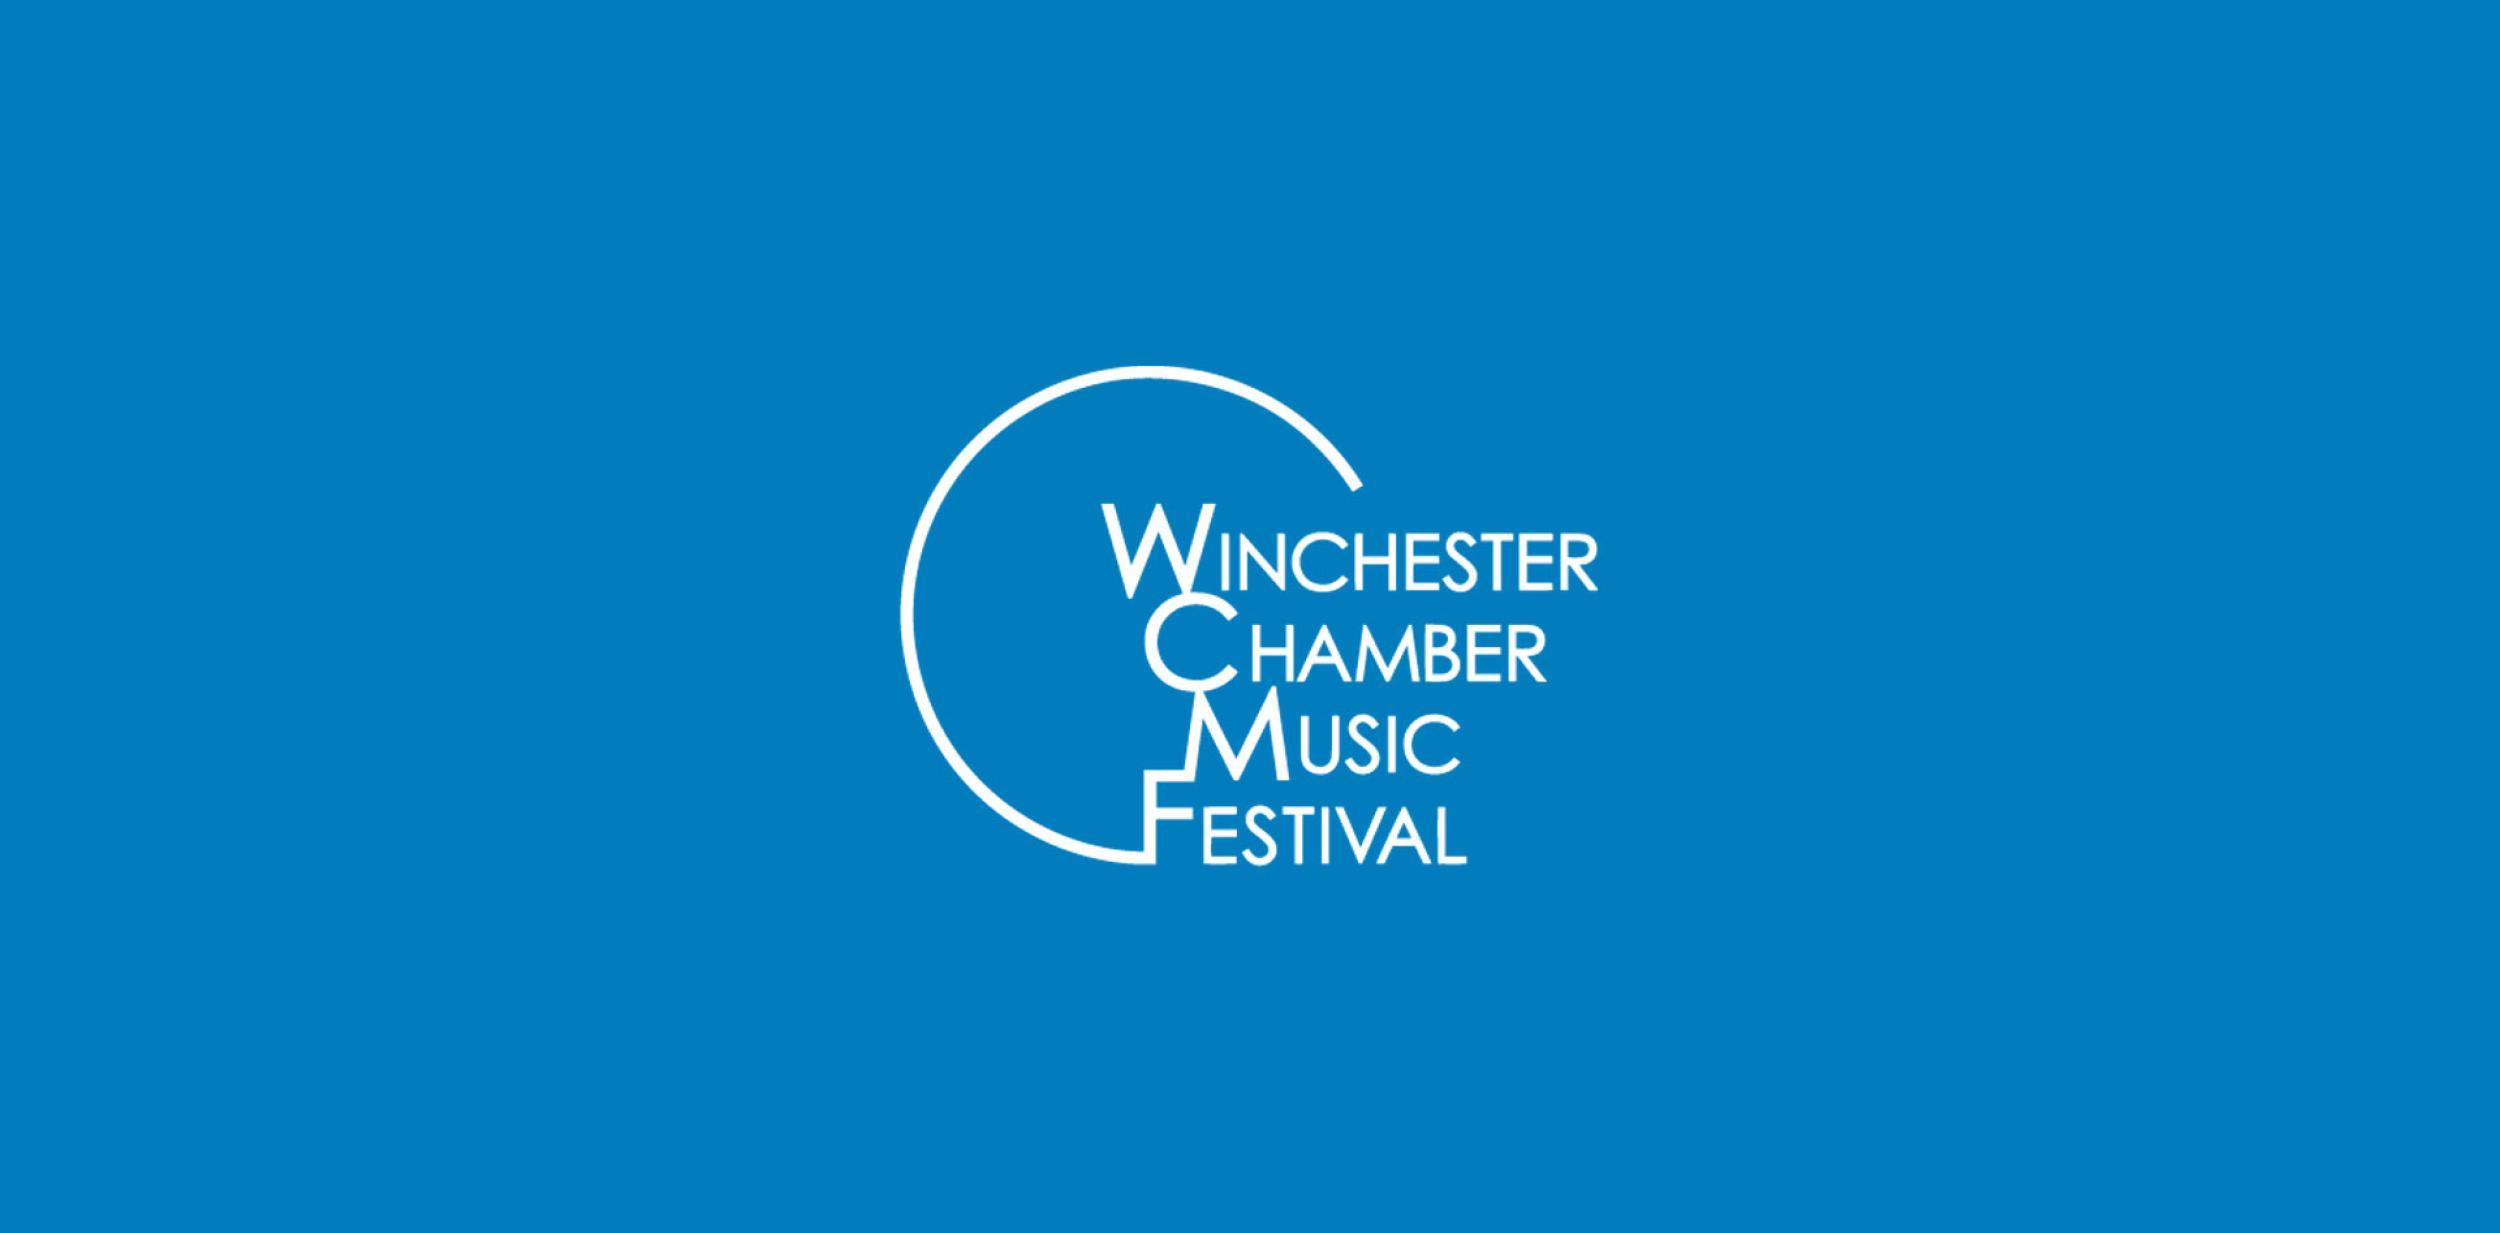 Winchester Chamber Music Festival logo